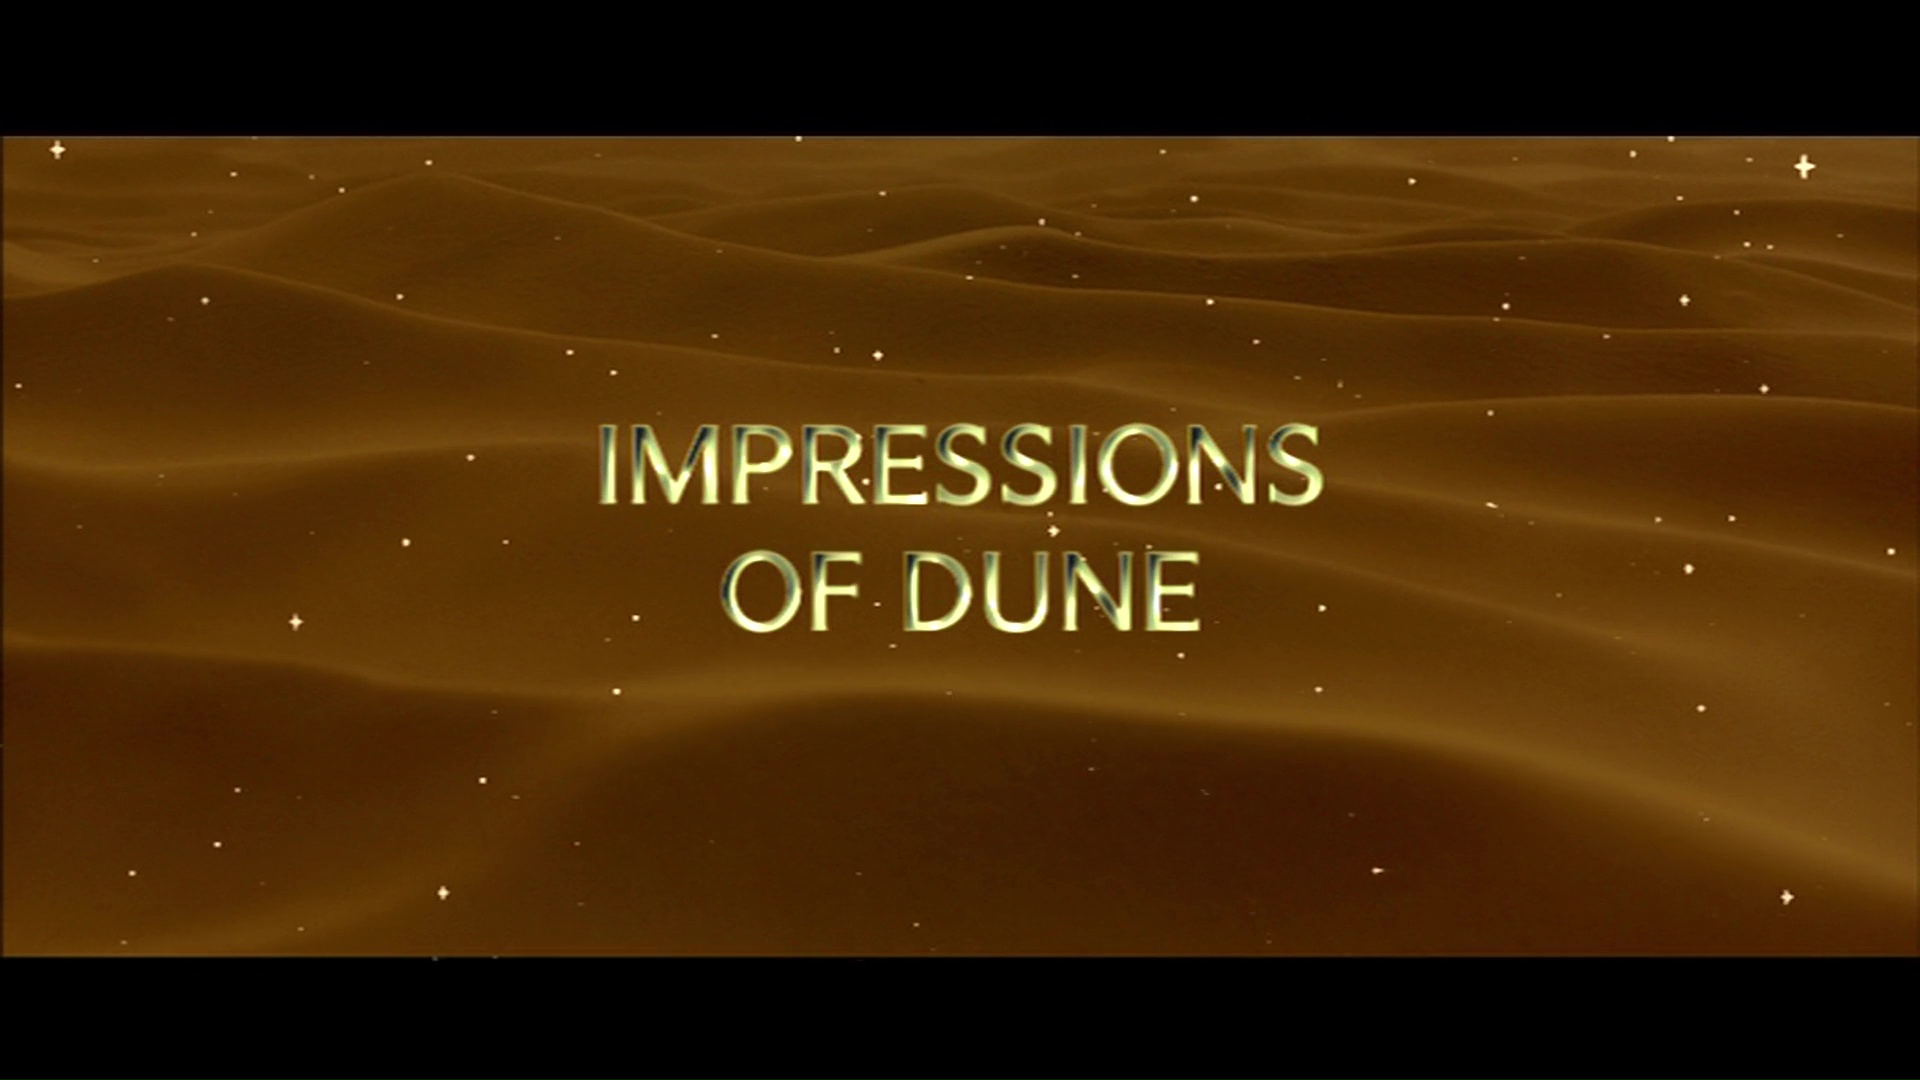 Dune Impressions of Dune featurette